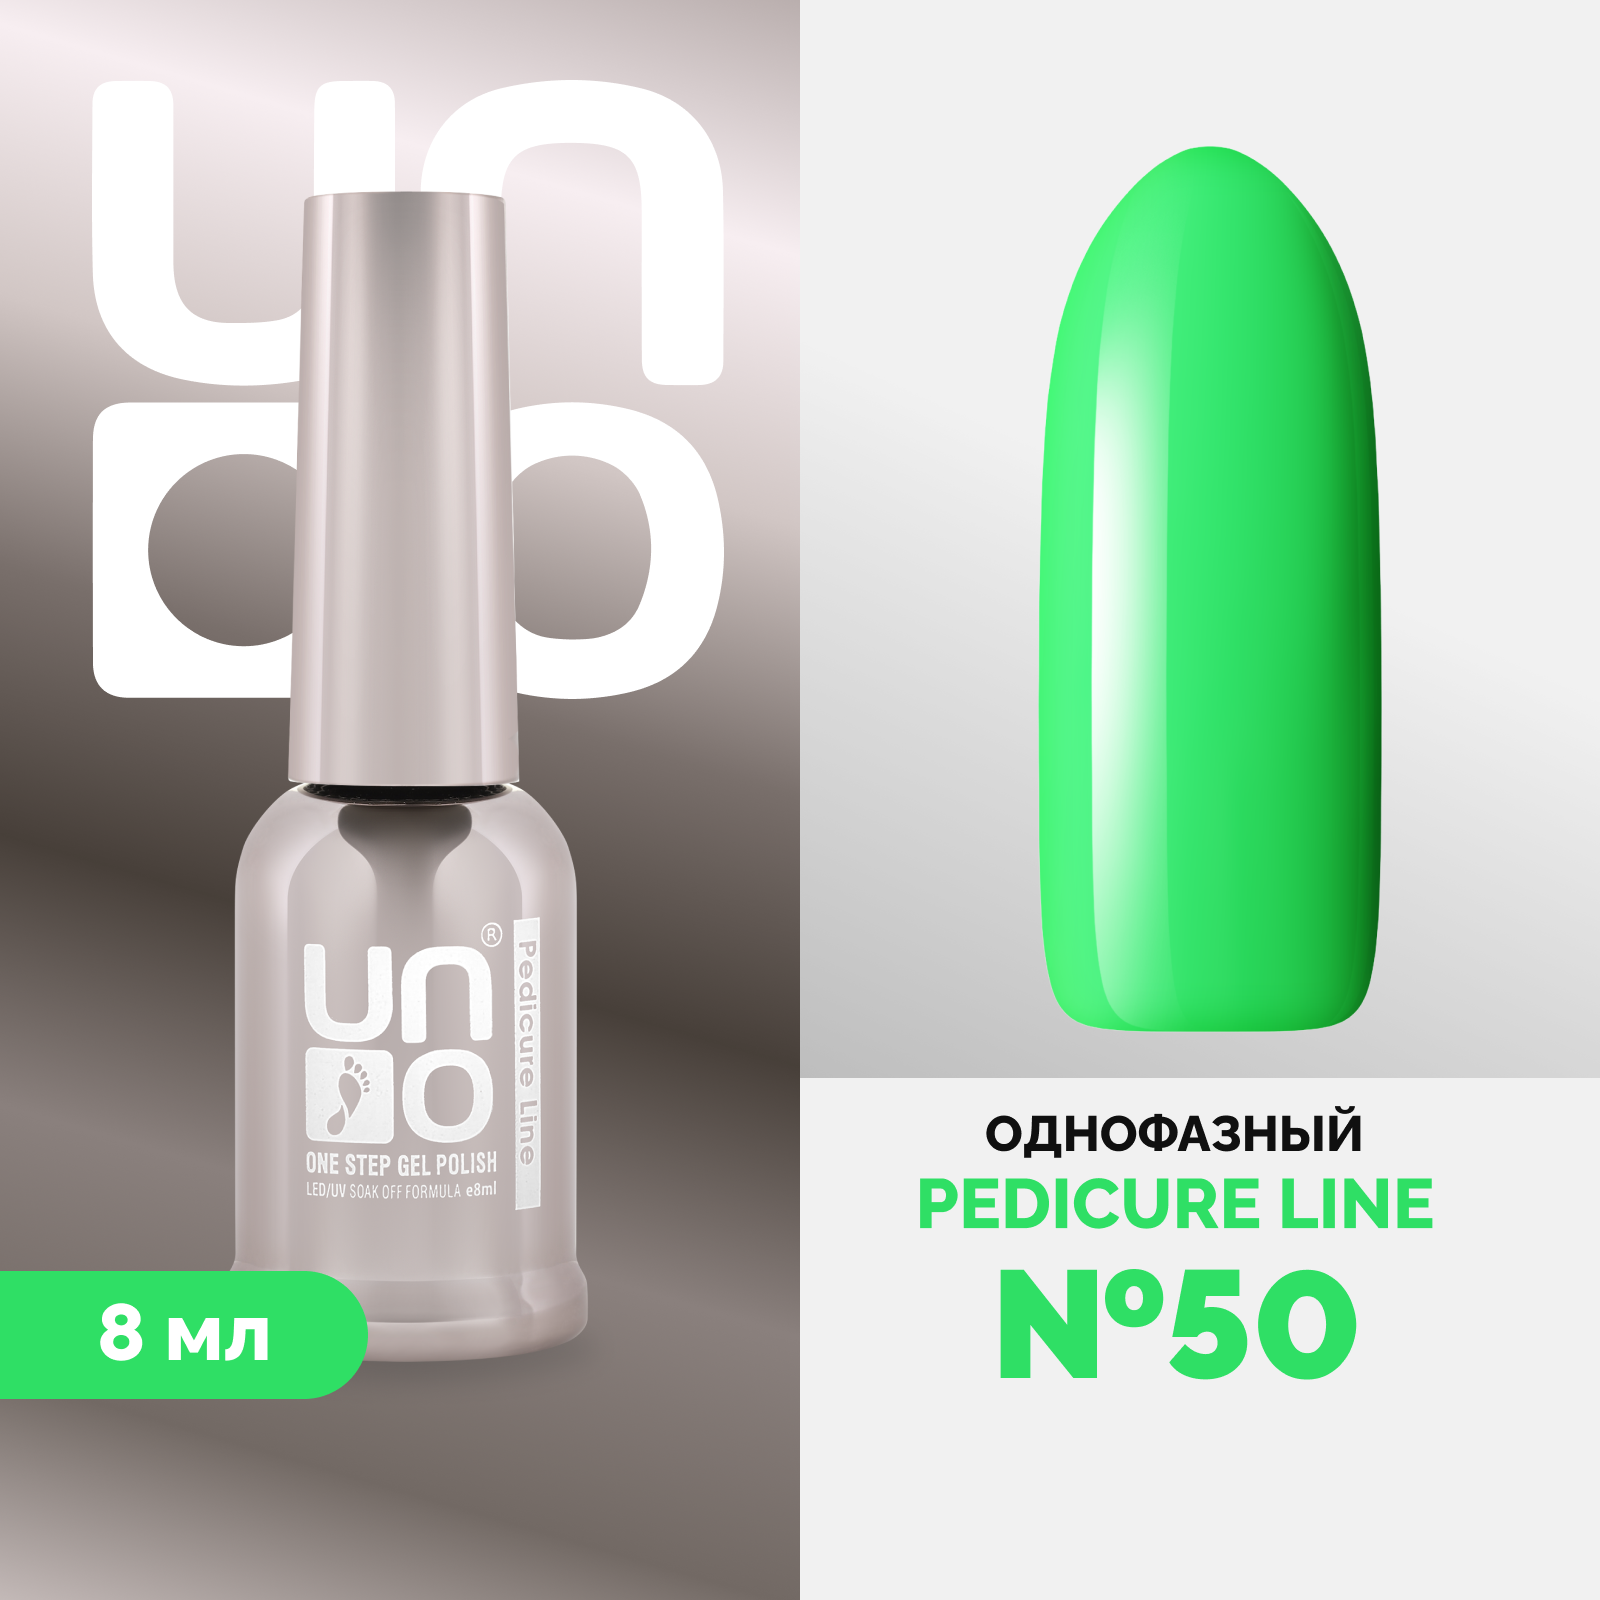 Однофазный гель-лак UNO Uno Pedicure Line 50 8 мл